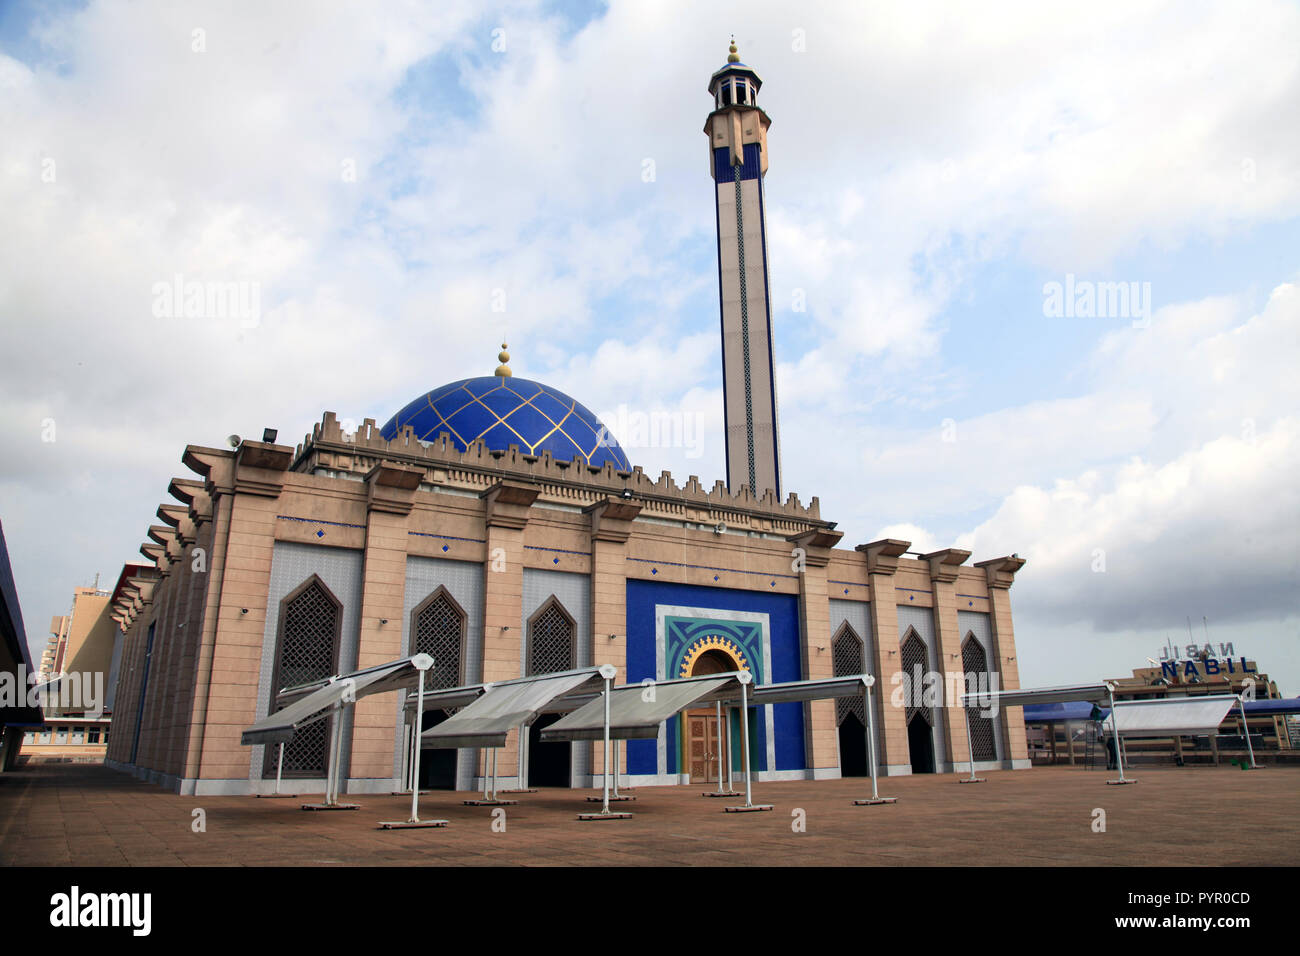 Grande Mosquee de Plateau, Abidjan, Cote d'Ivoire Stock Photo